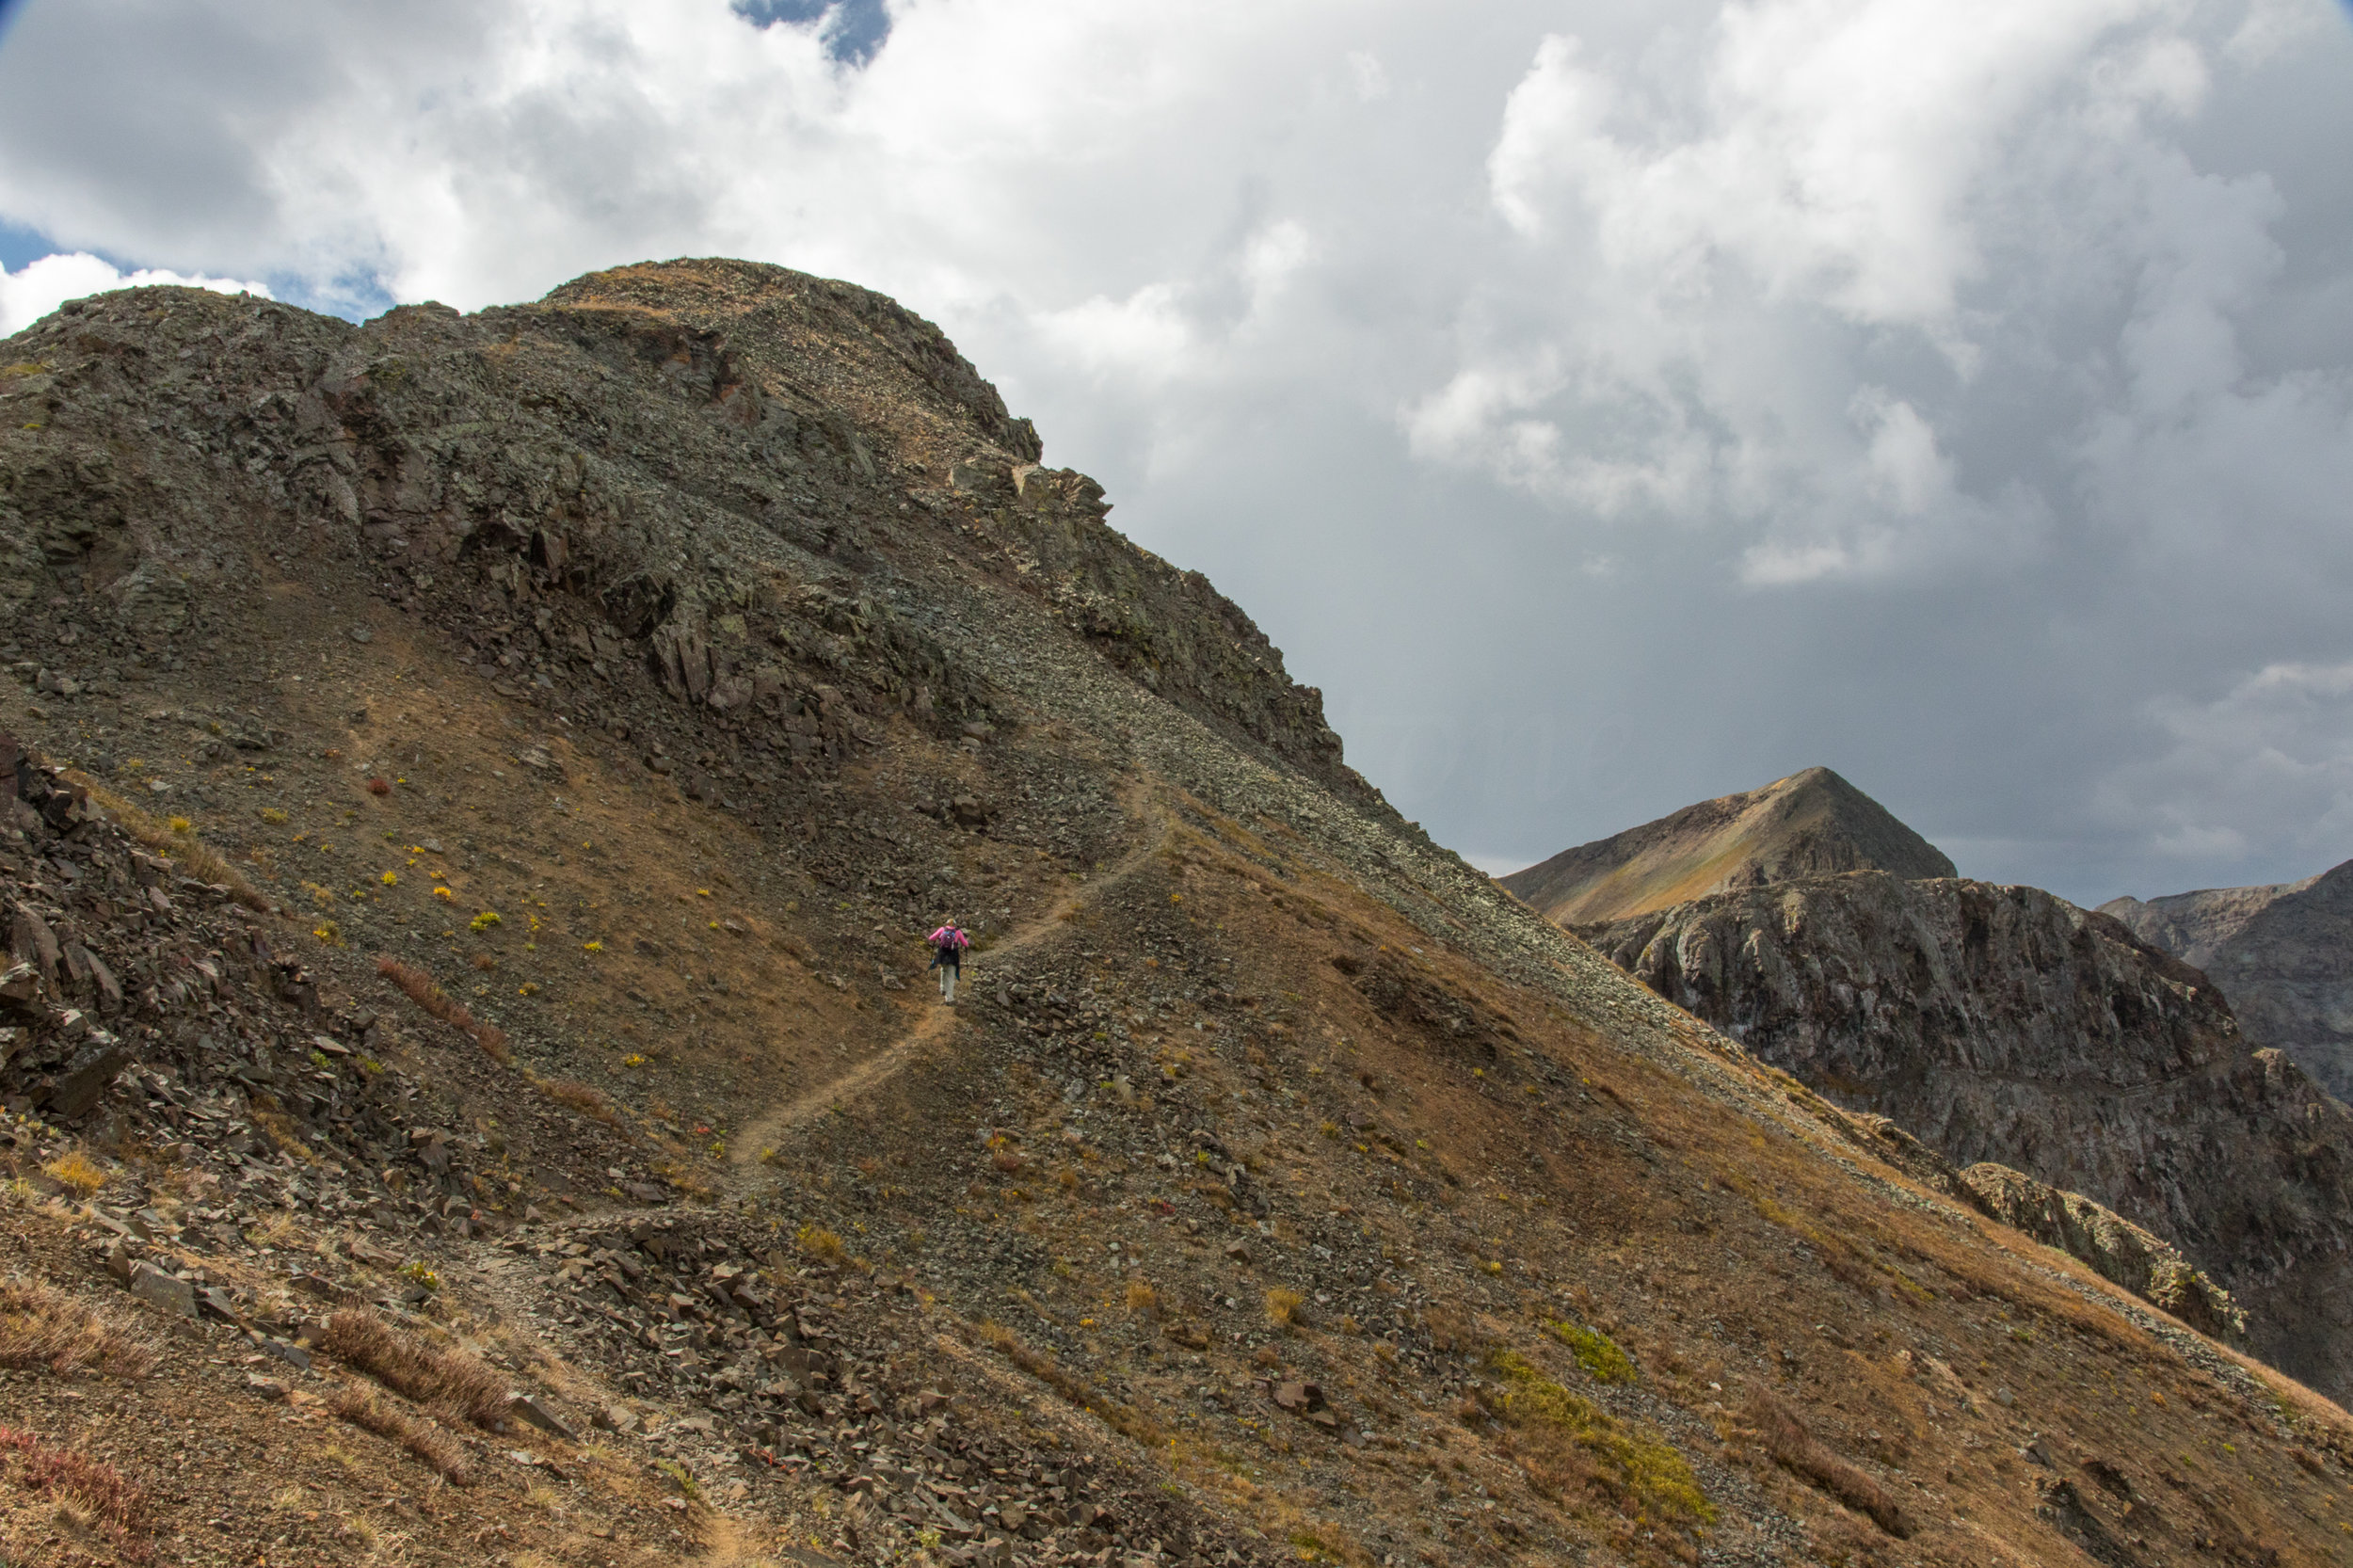 Lisa Vajda hiking across the ridge, Image # 7654